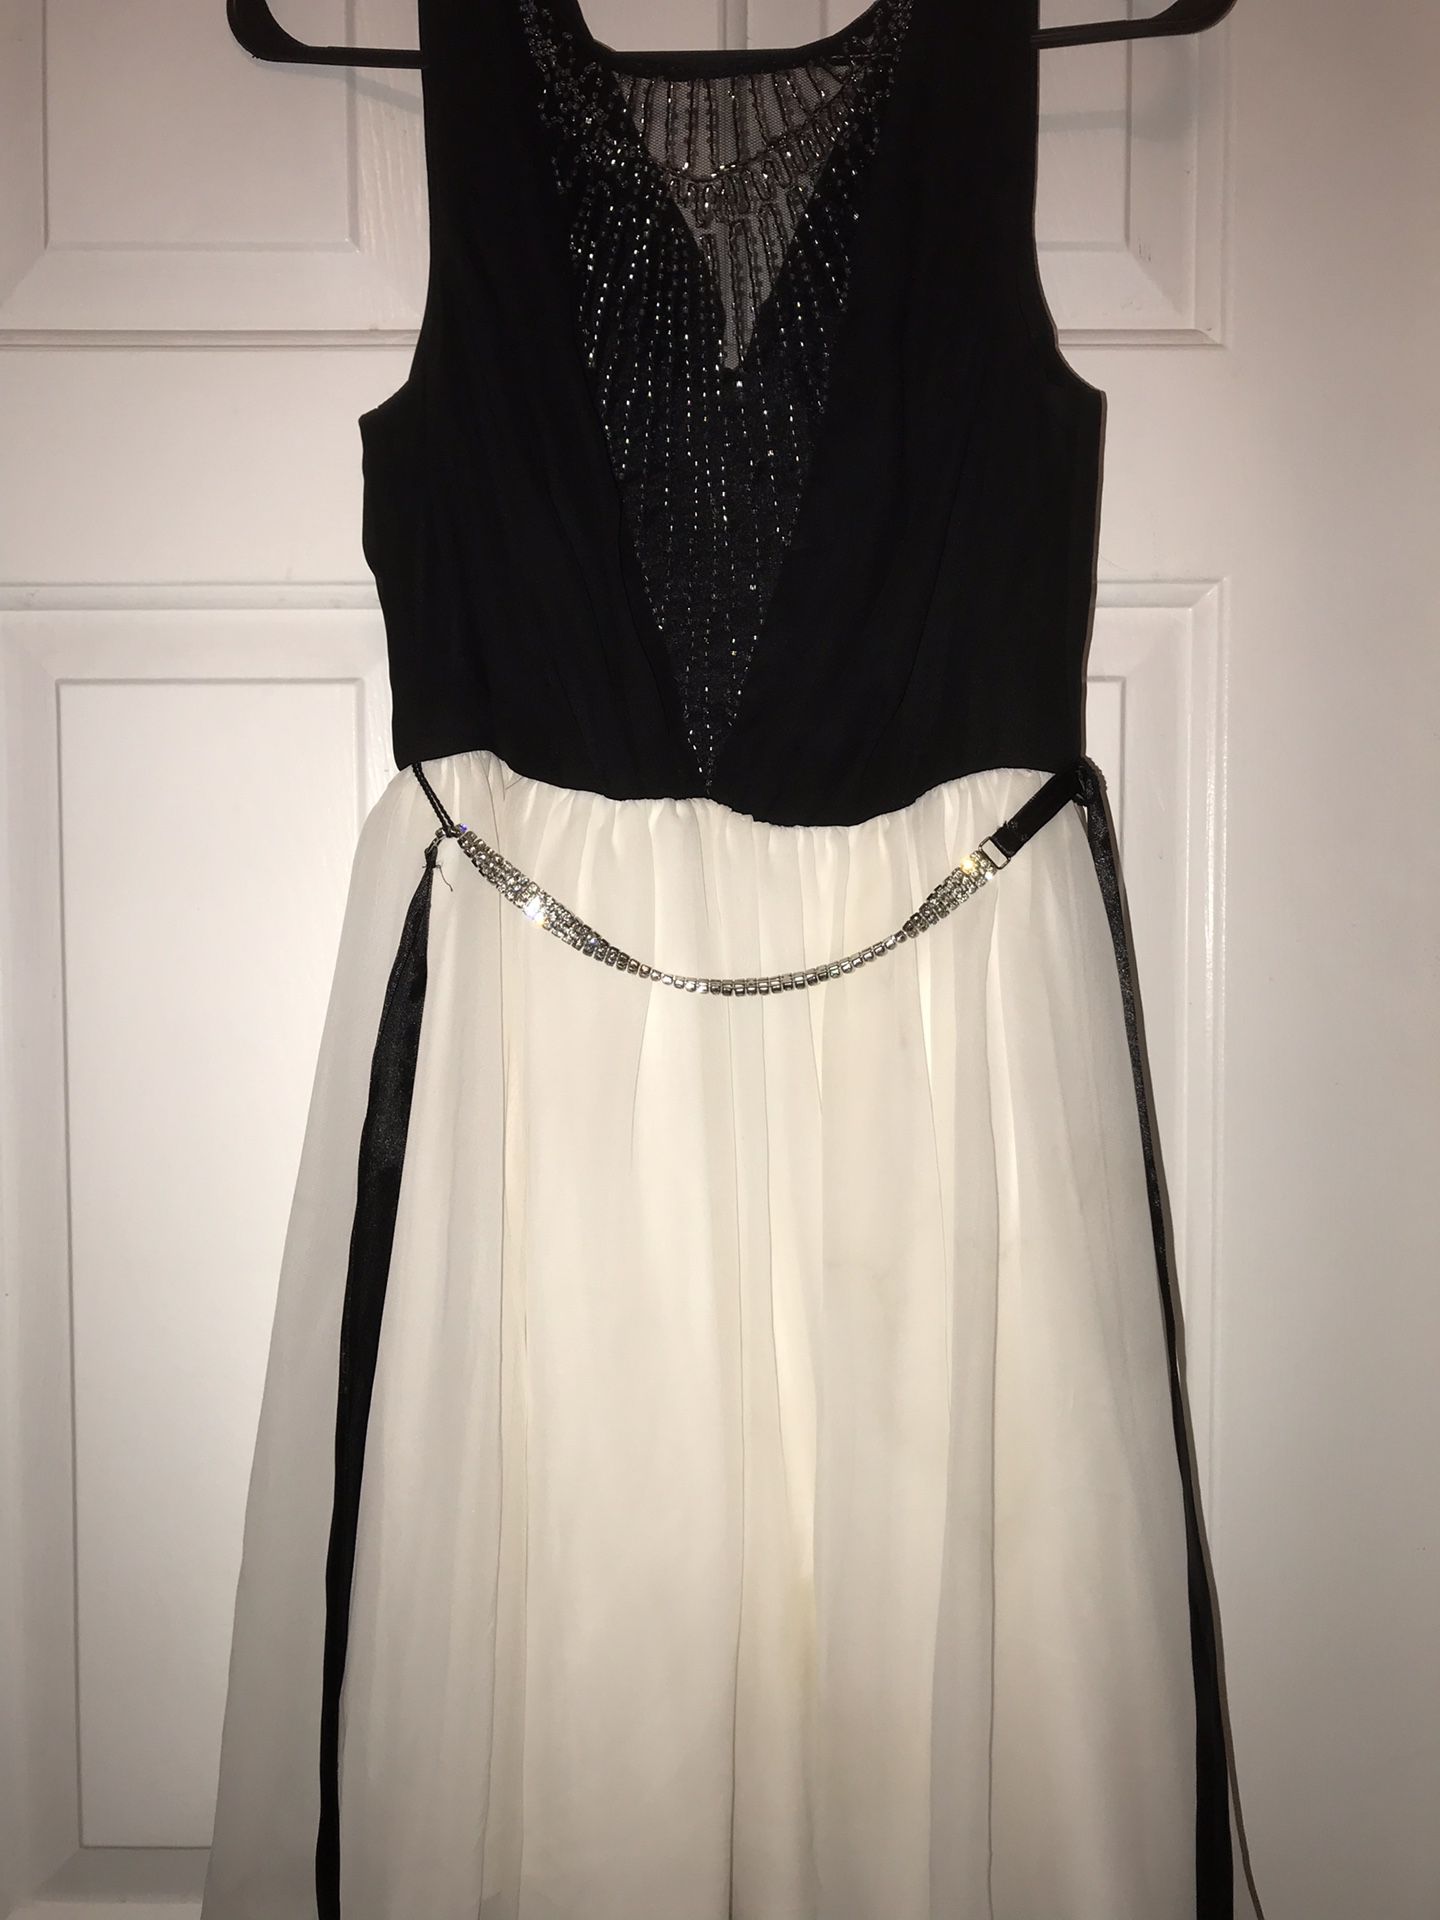 fashionable/fancy dress - size 6